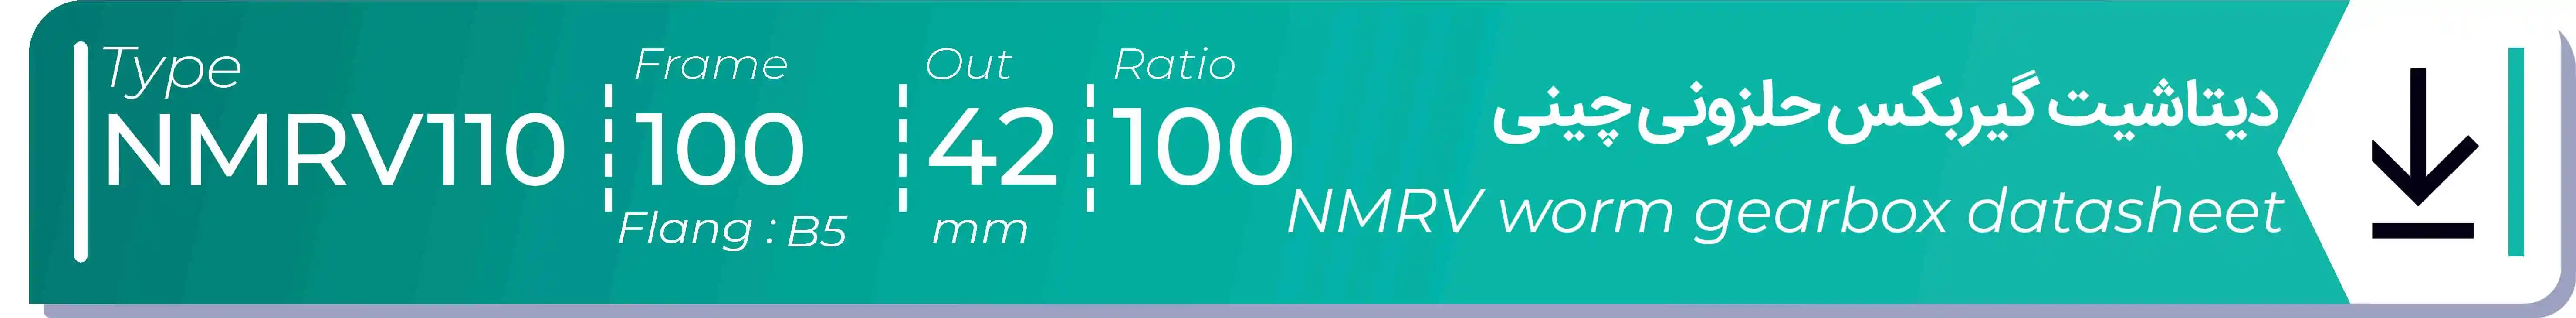  دیتاشیت و مشخصات فنی گیربکس حلزونی چینی   NMRV110  -  با خروجی 42- میلی متر و نسبت100 و فریم 100